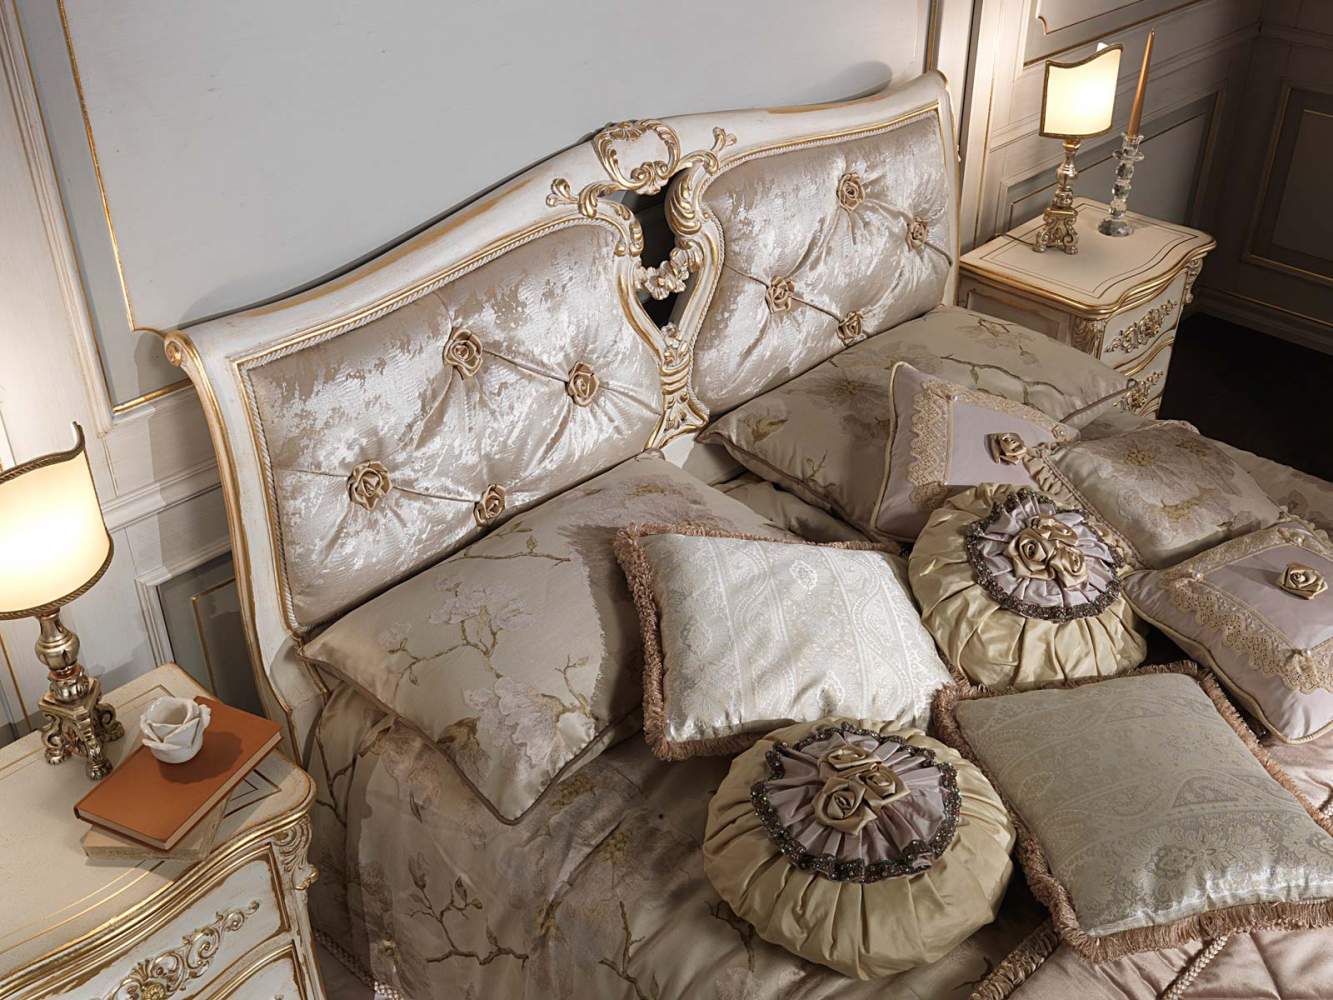 Camera da letto classica in stile Luigi XVI, letto capitonnè, comodini, lenzuola e cusini a tema